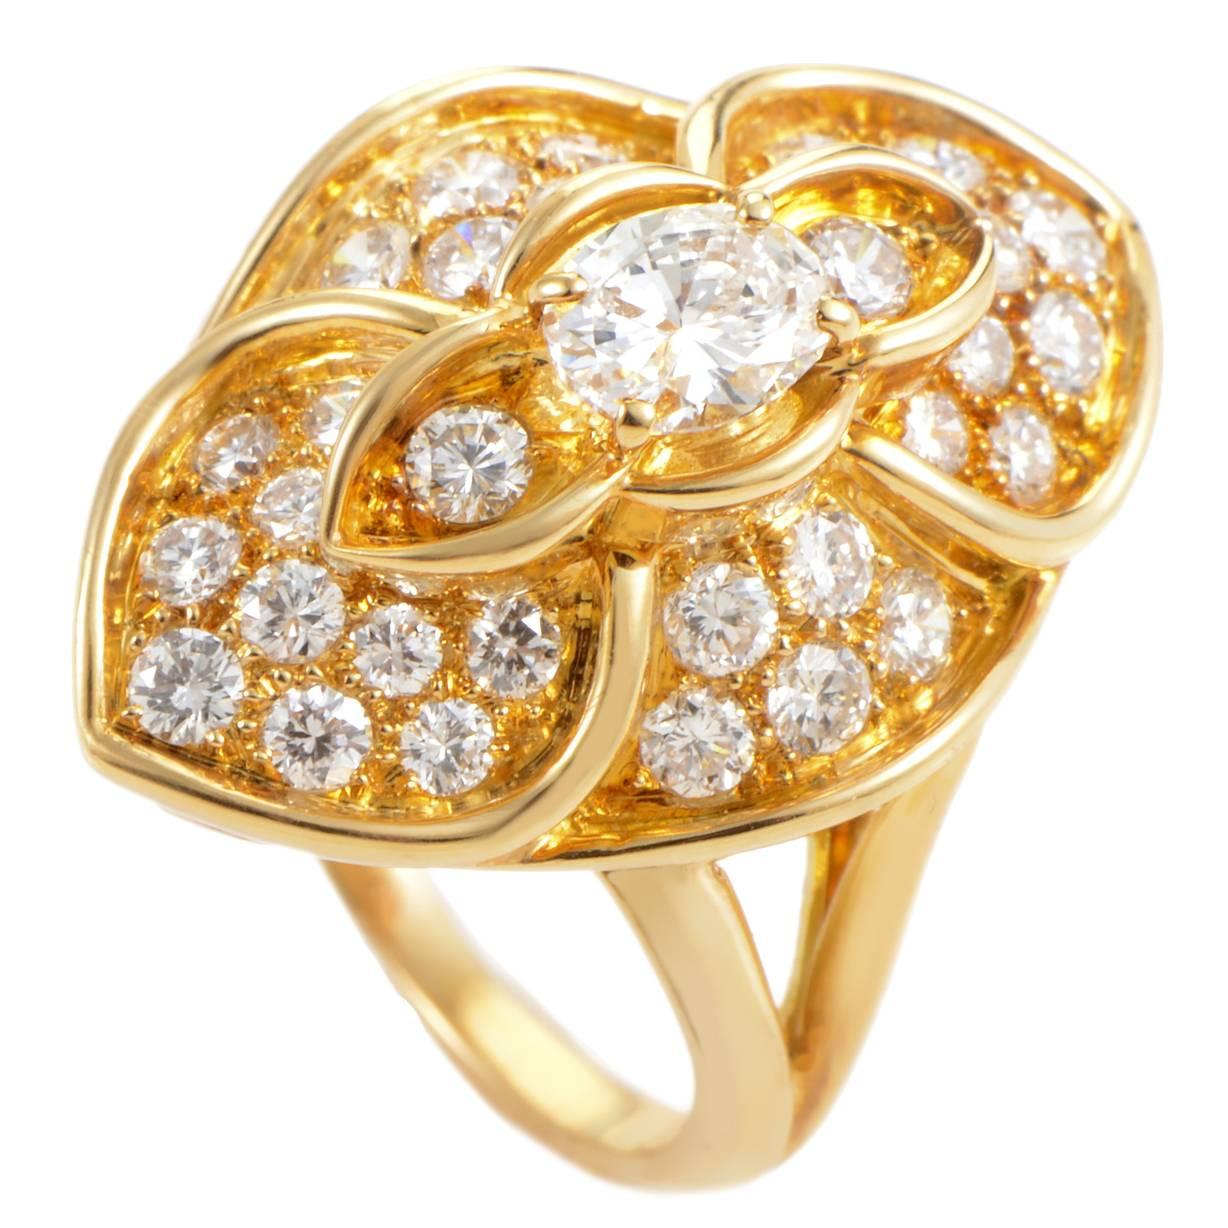 Piaget Diamond Gold Ring